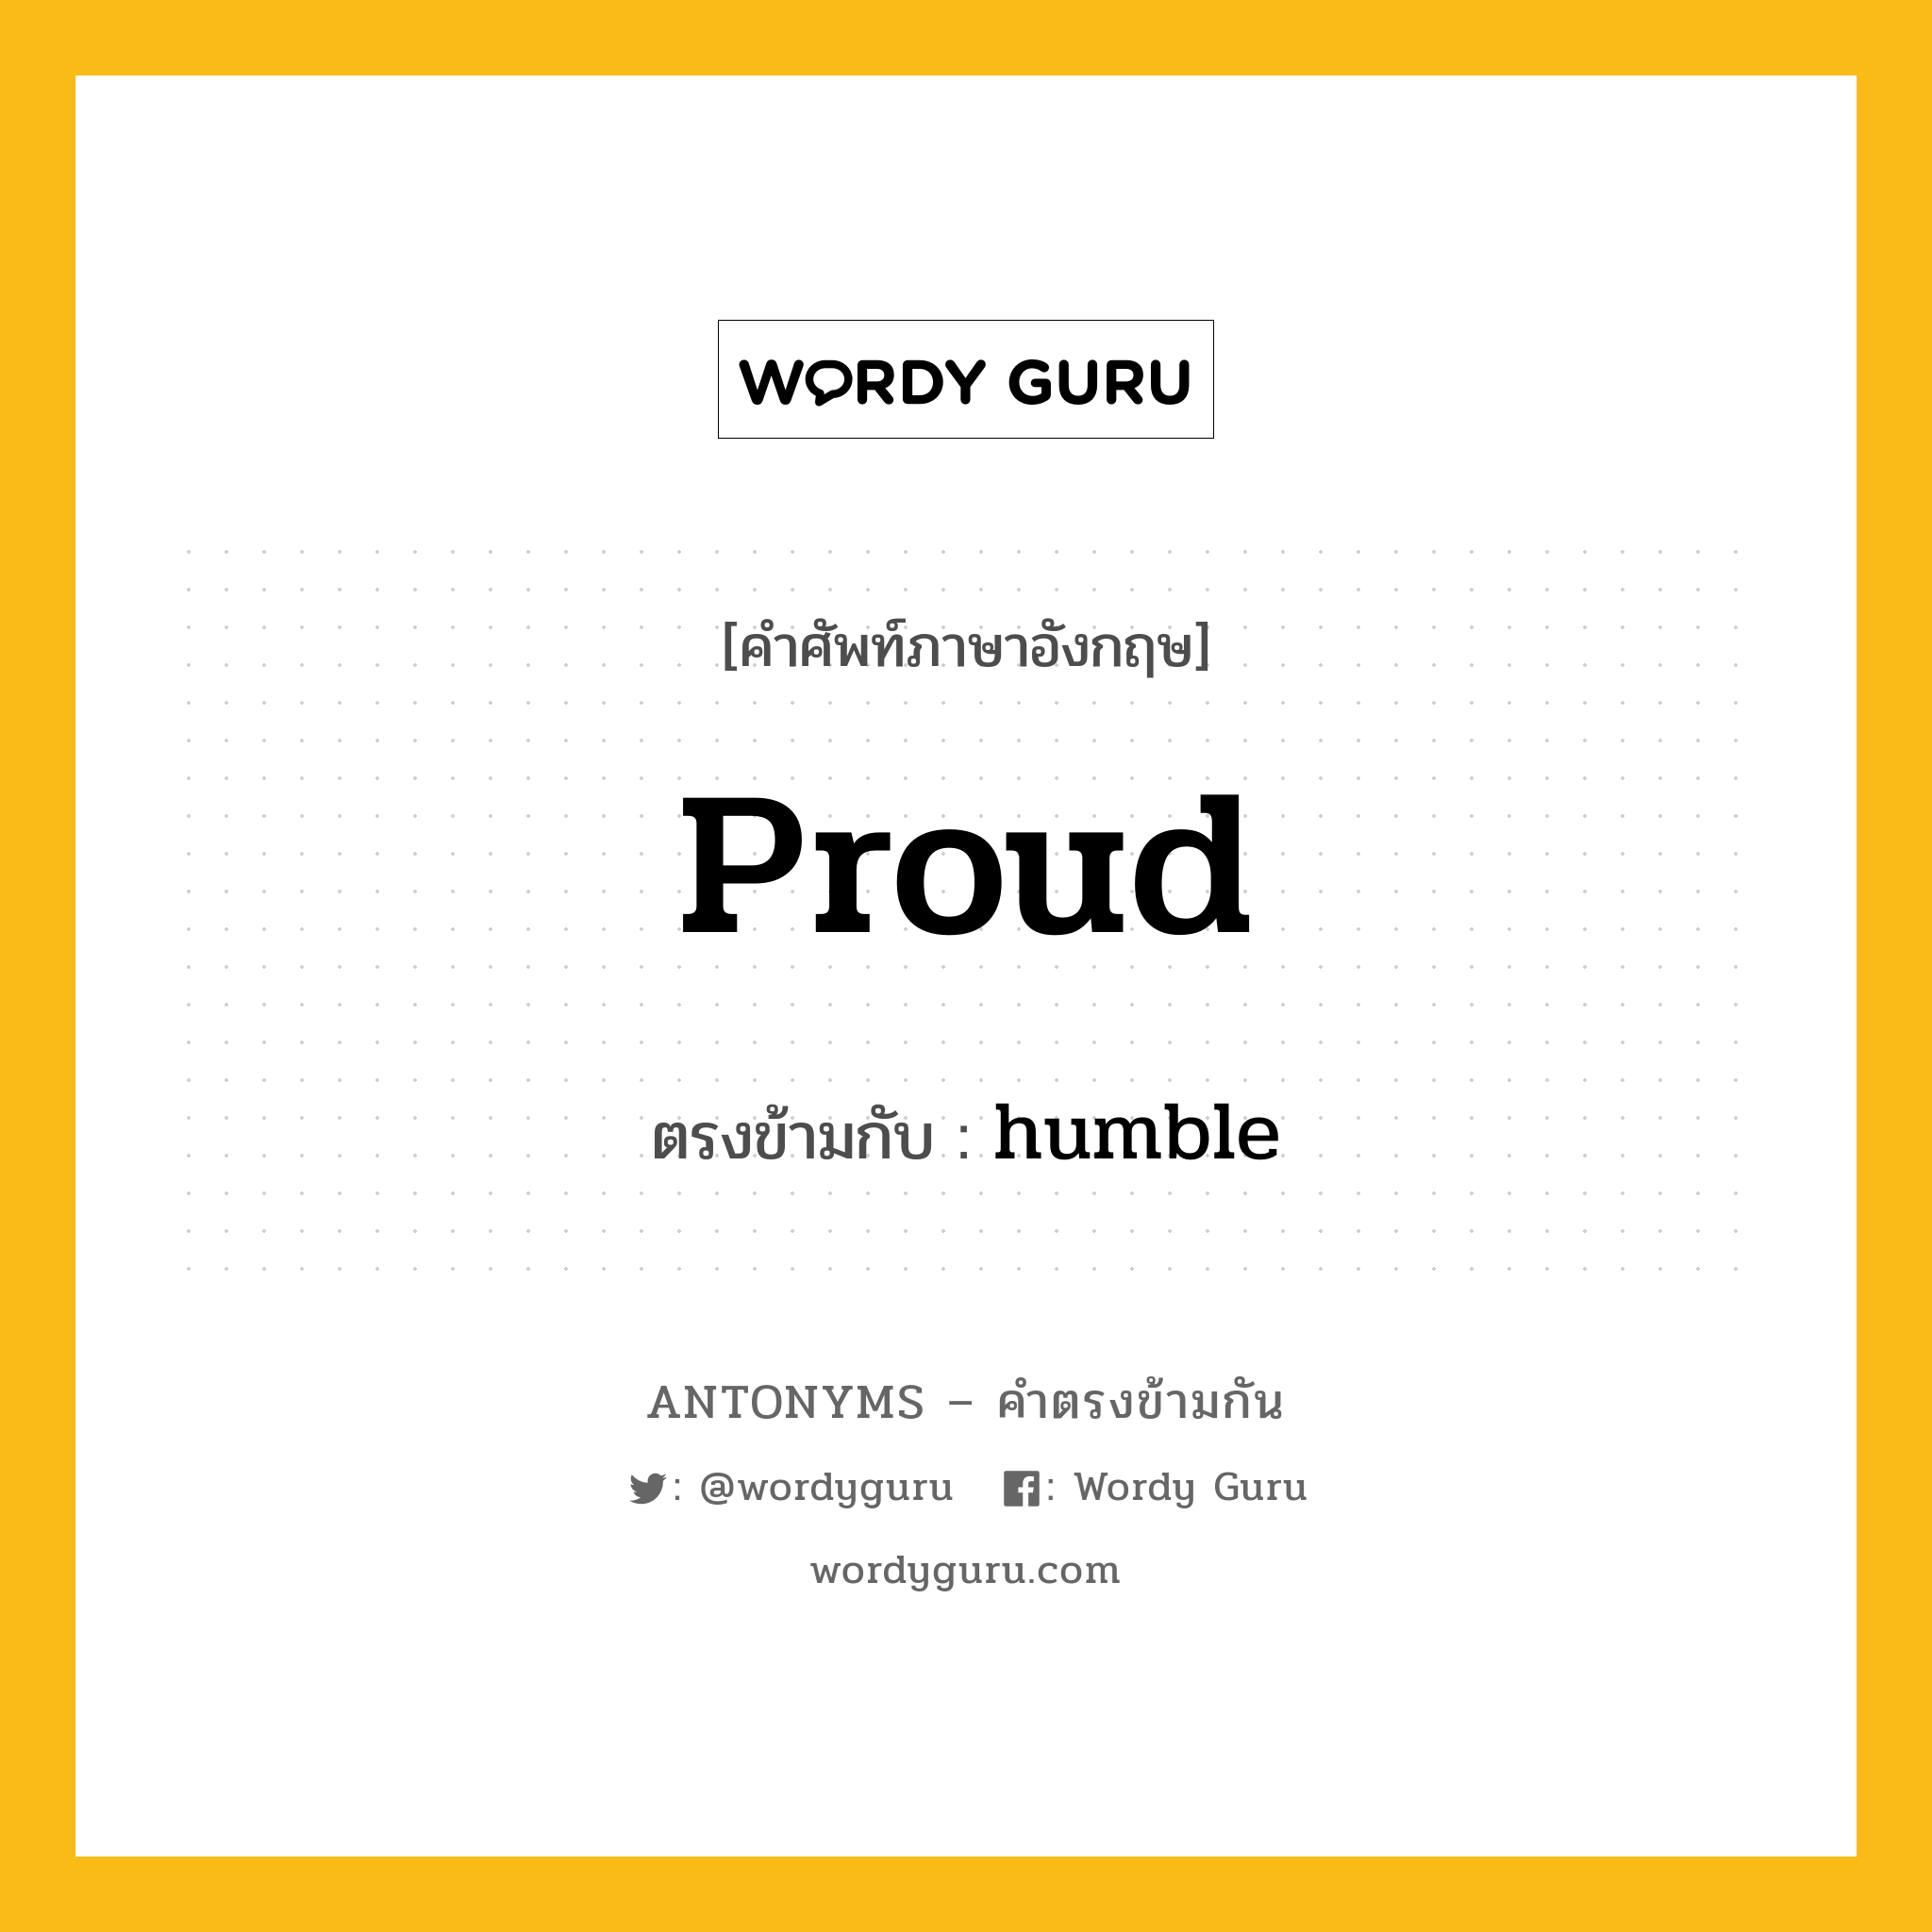 proud เป็นคำตรงข้ามกับคำไหนบ้าง?, คำศัพท์ภาษาอังกฤษ proud ตรงข้ามกับ humble หมวด humble